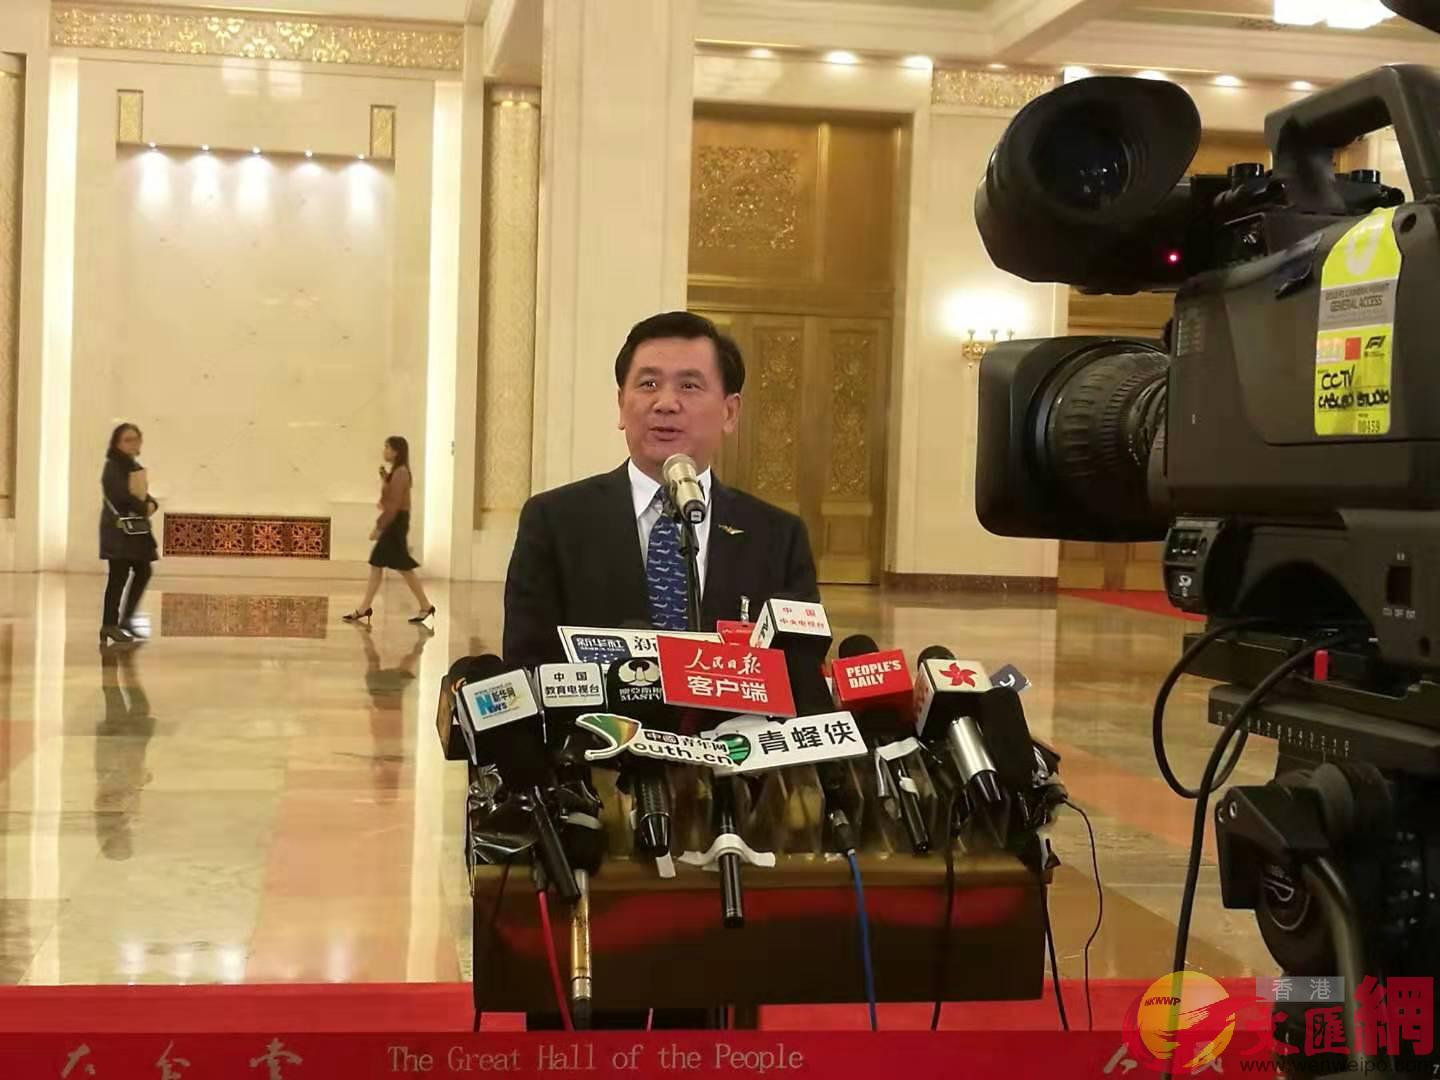 中國民航局局長馮正霖是今年在部長通道首個發言的部長C大公文匯全媒體記者 張帥 攝